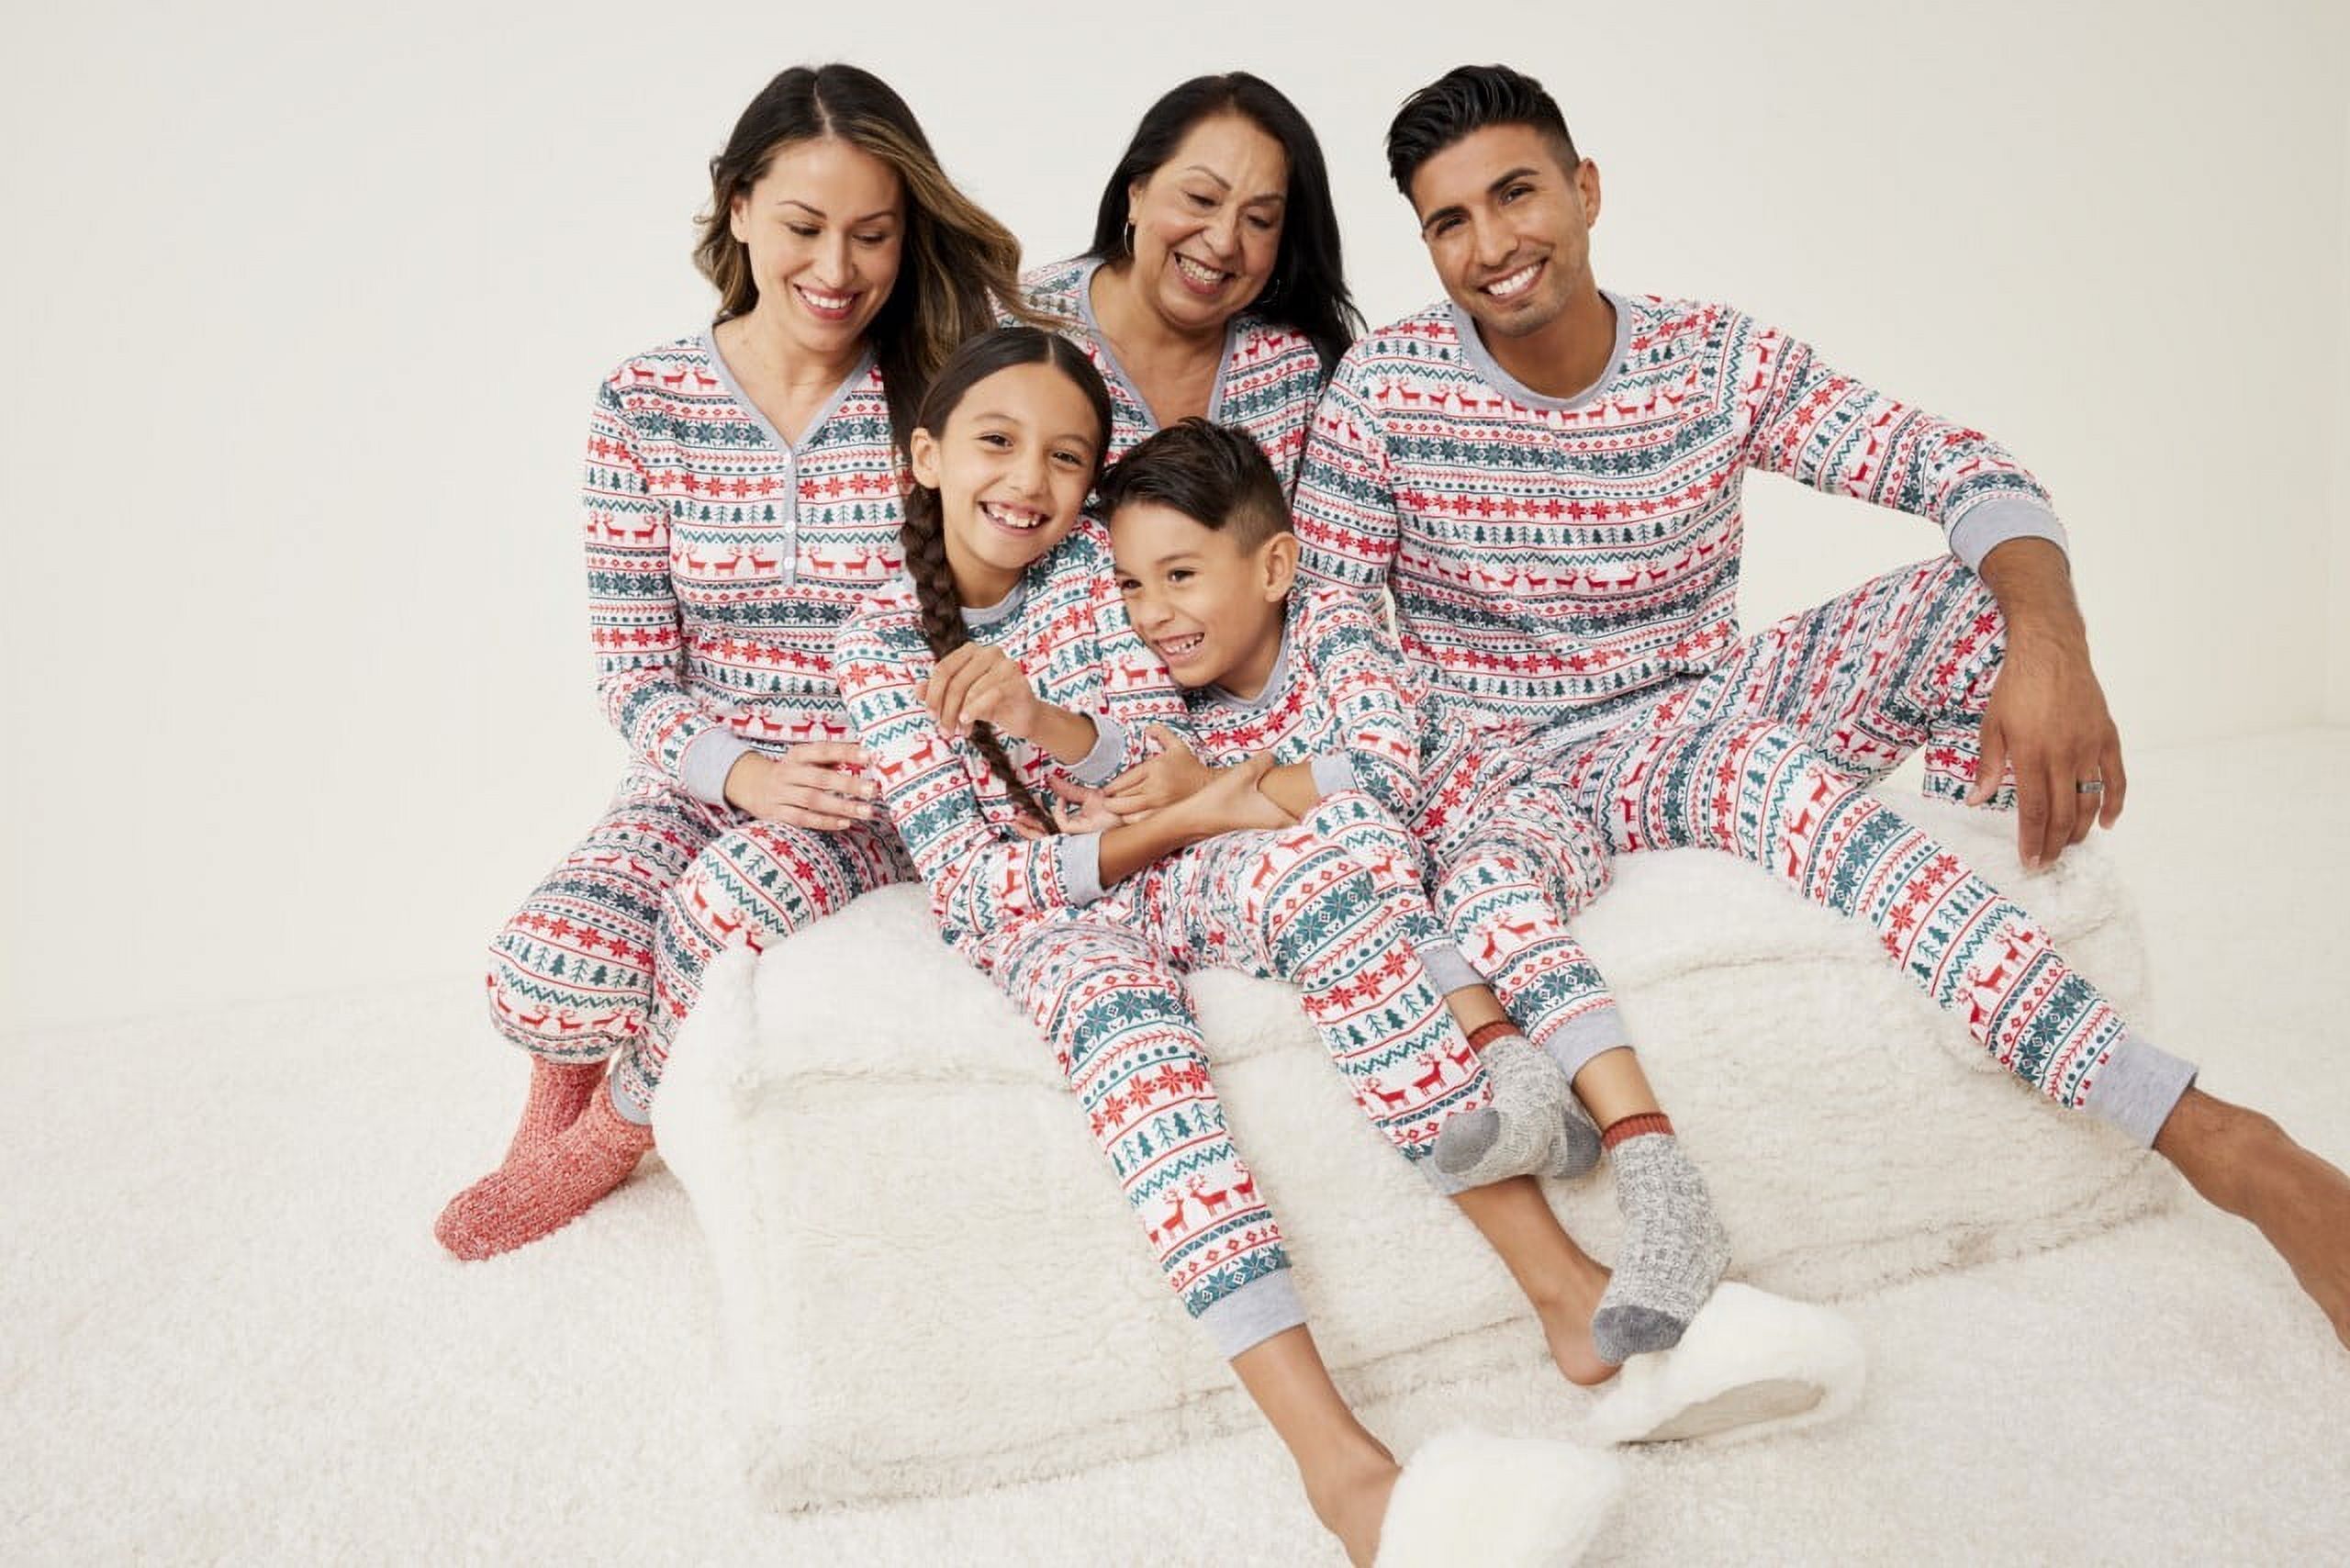 Baozhu Family Matching Reindeer Print Christmas Sleepwear Pajamas Set, 2 Piece (Unisex Baby & Toddler 3M-18M) - image 1 of 15